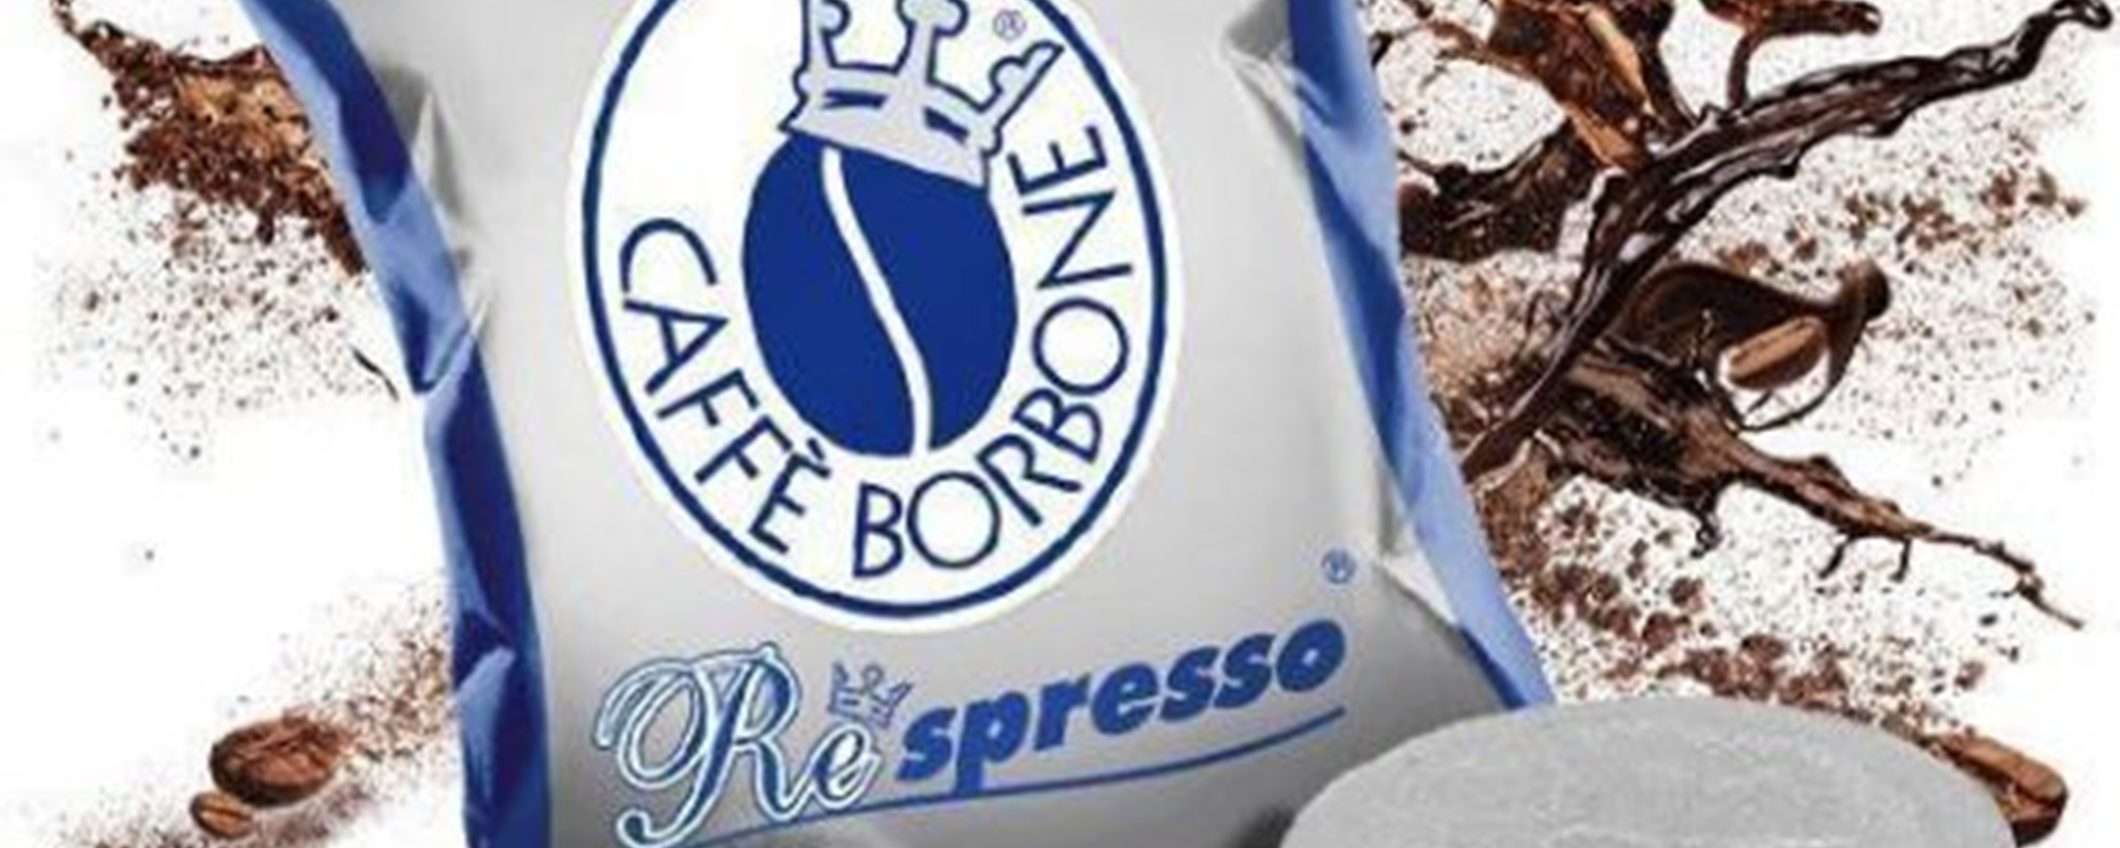 400 cialde caffè Borbone miscela Blu a soli 71€: incredibile offerta di eBay!